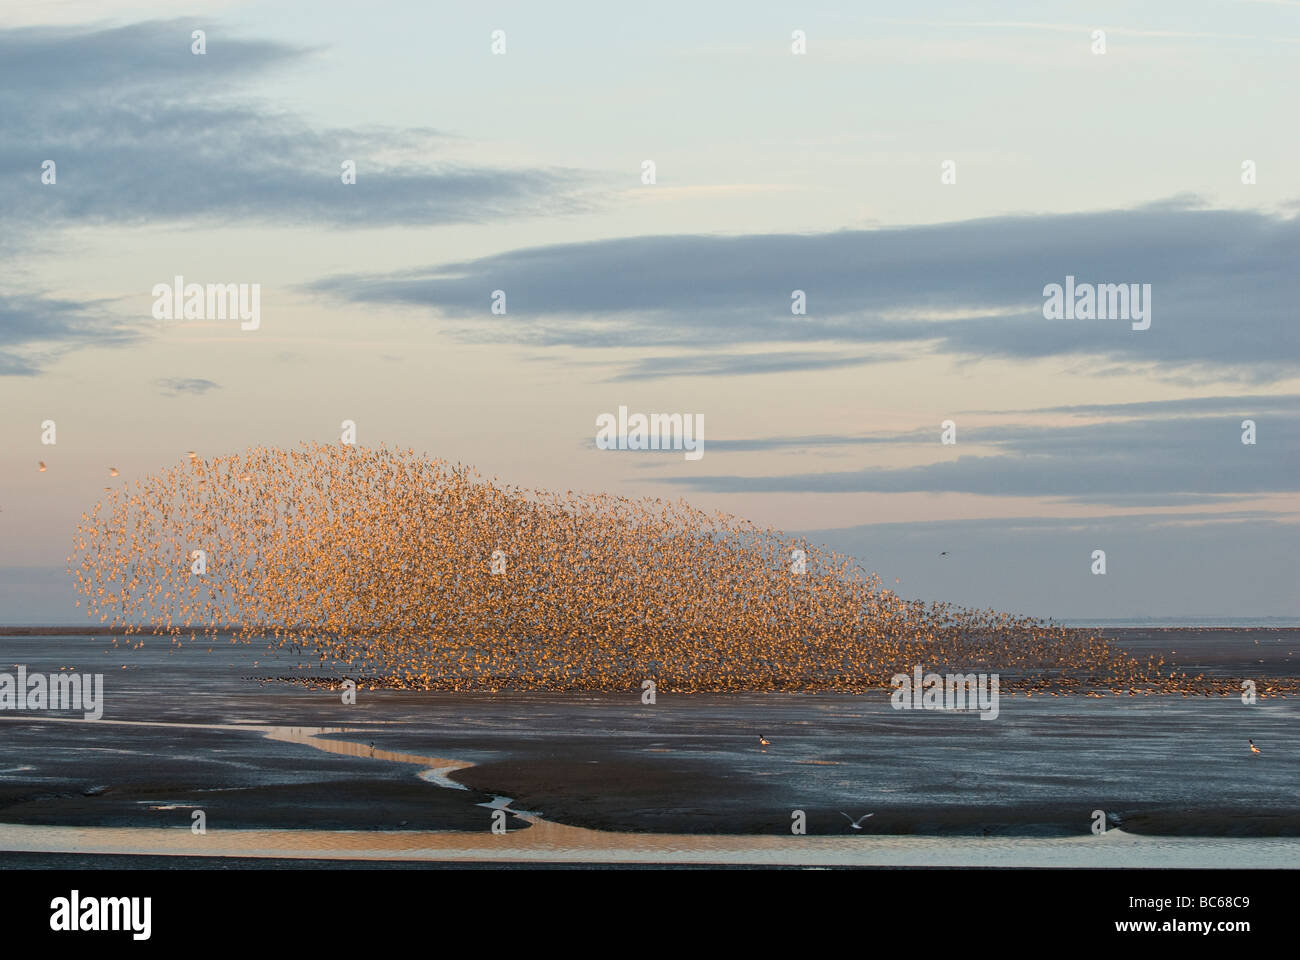 Roten Knoten das Wattenmeer wegen wollte von einem Raubvogel Flug abheben. Stockfoto